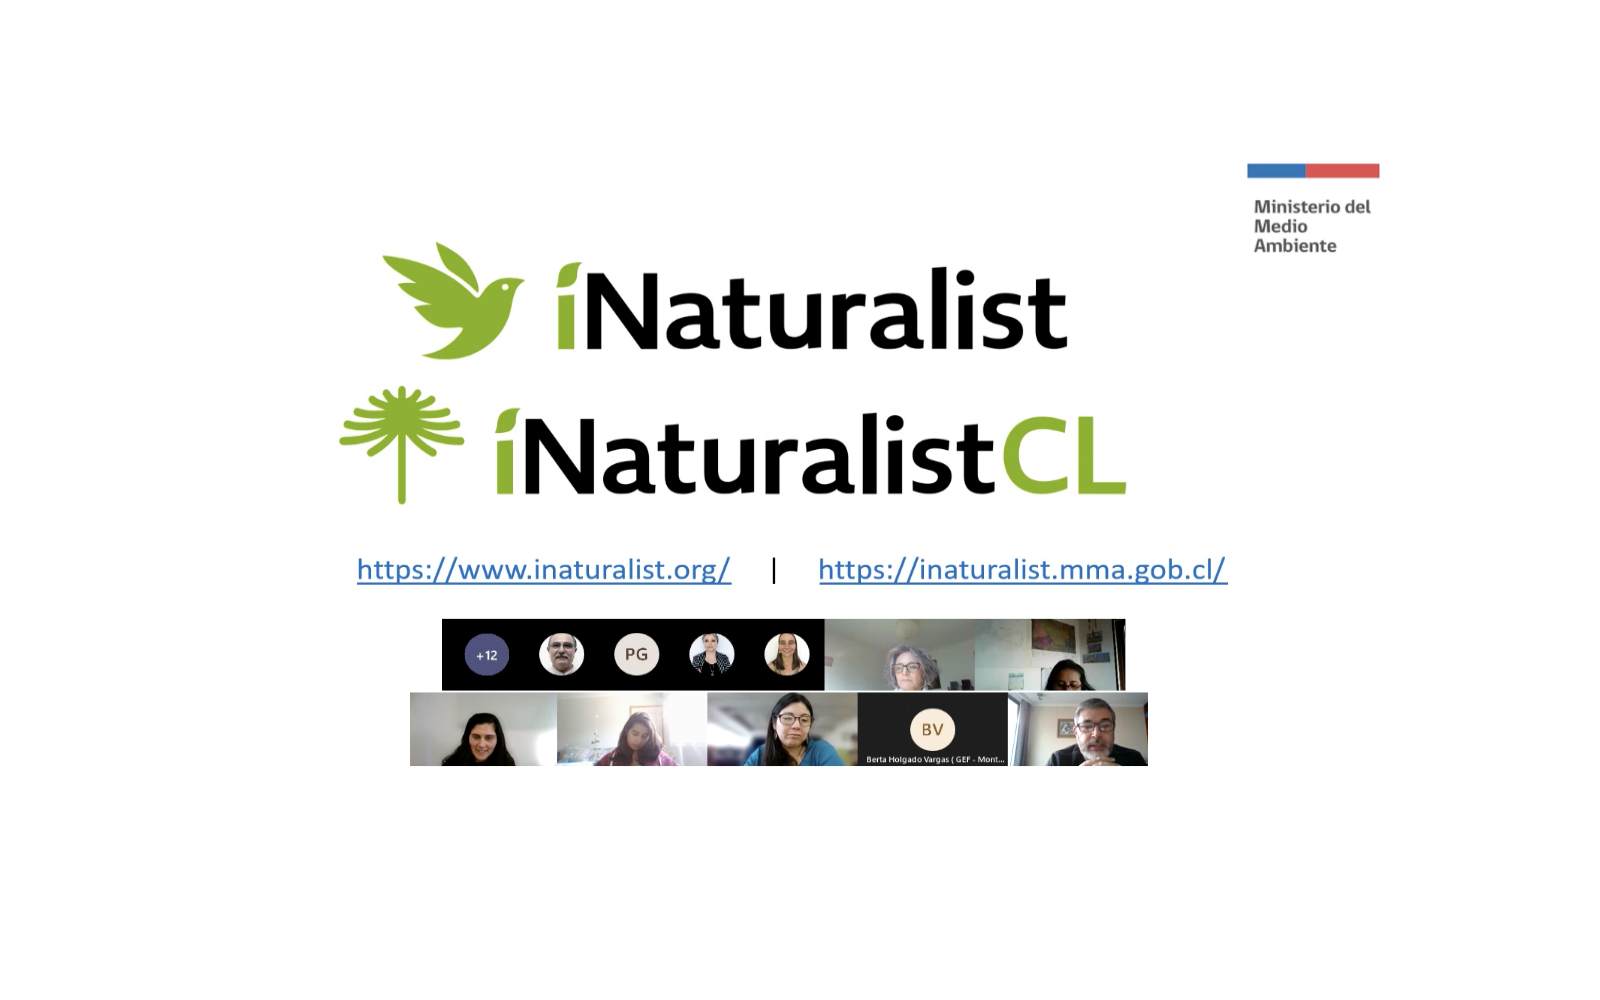 Ciencia ciudadana y la aplicación iNaturalistCL